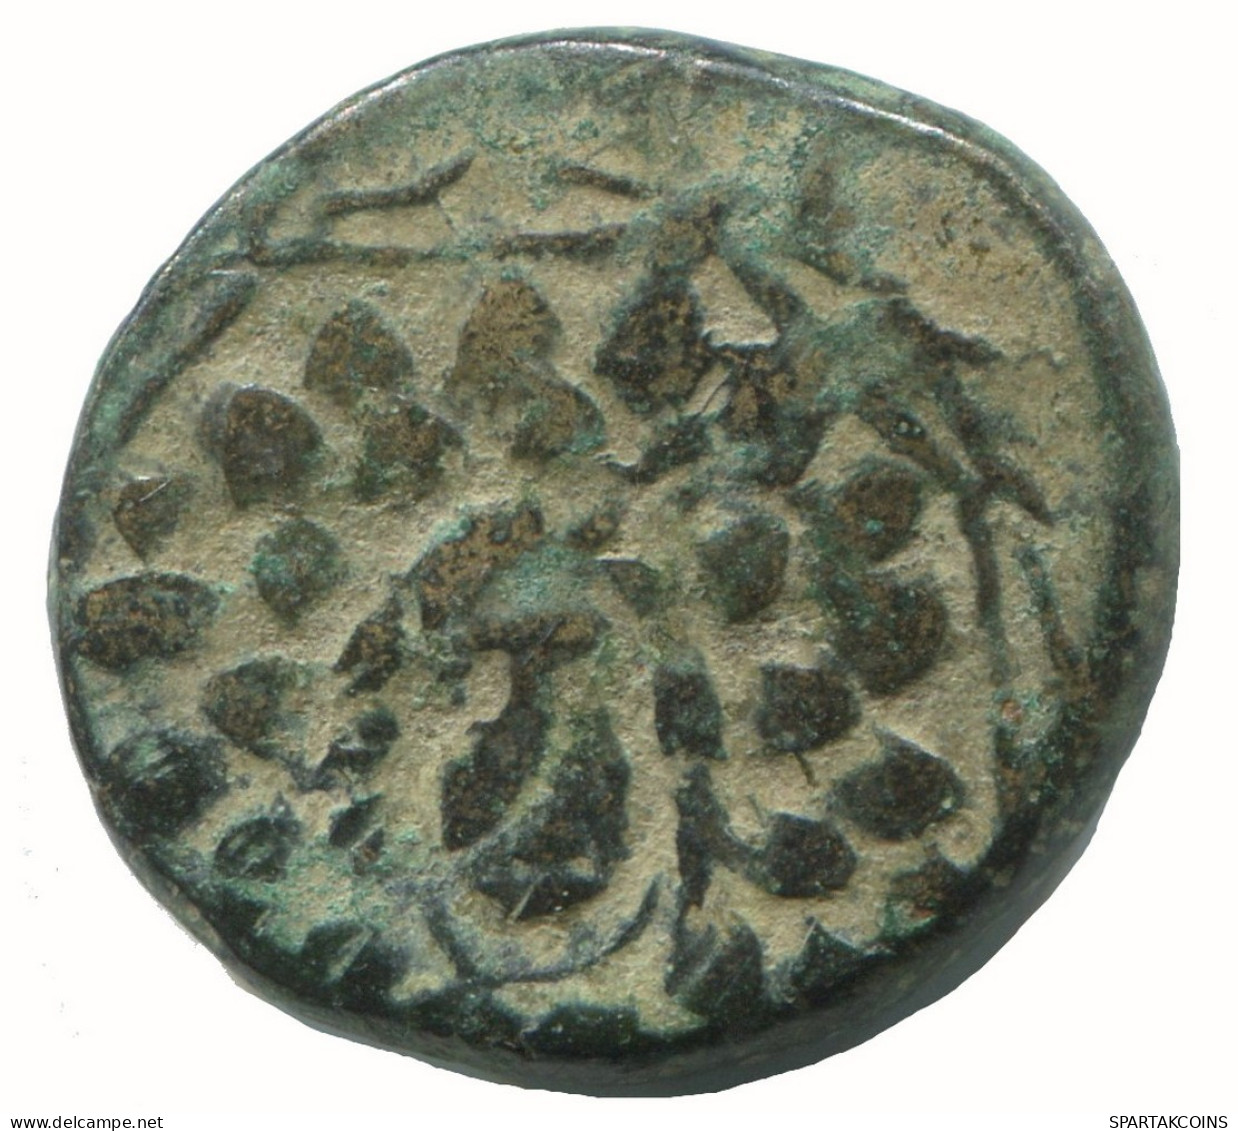 AMISOS PONTOS 100 BC Aegis With Facing Gorgon 7g/21mm GRIECHISCHE Münze #NNN1567.30.D.A - Griechische Münzen